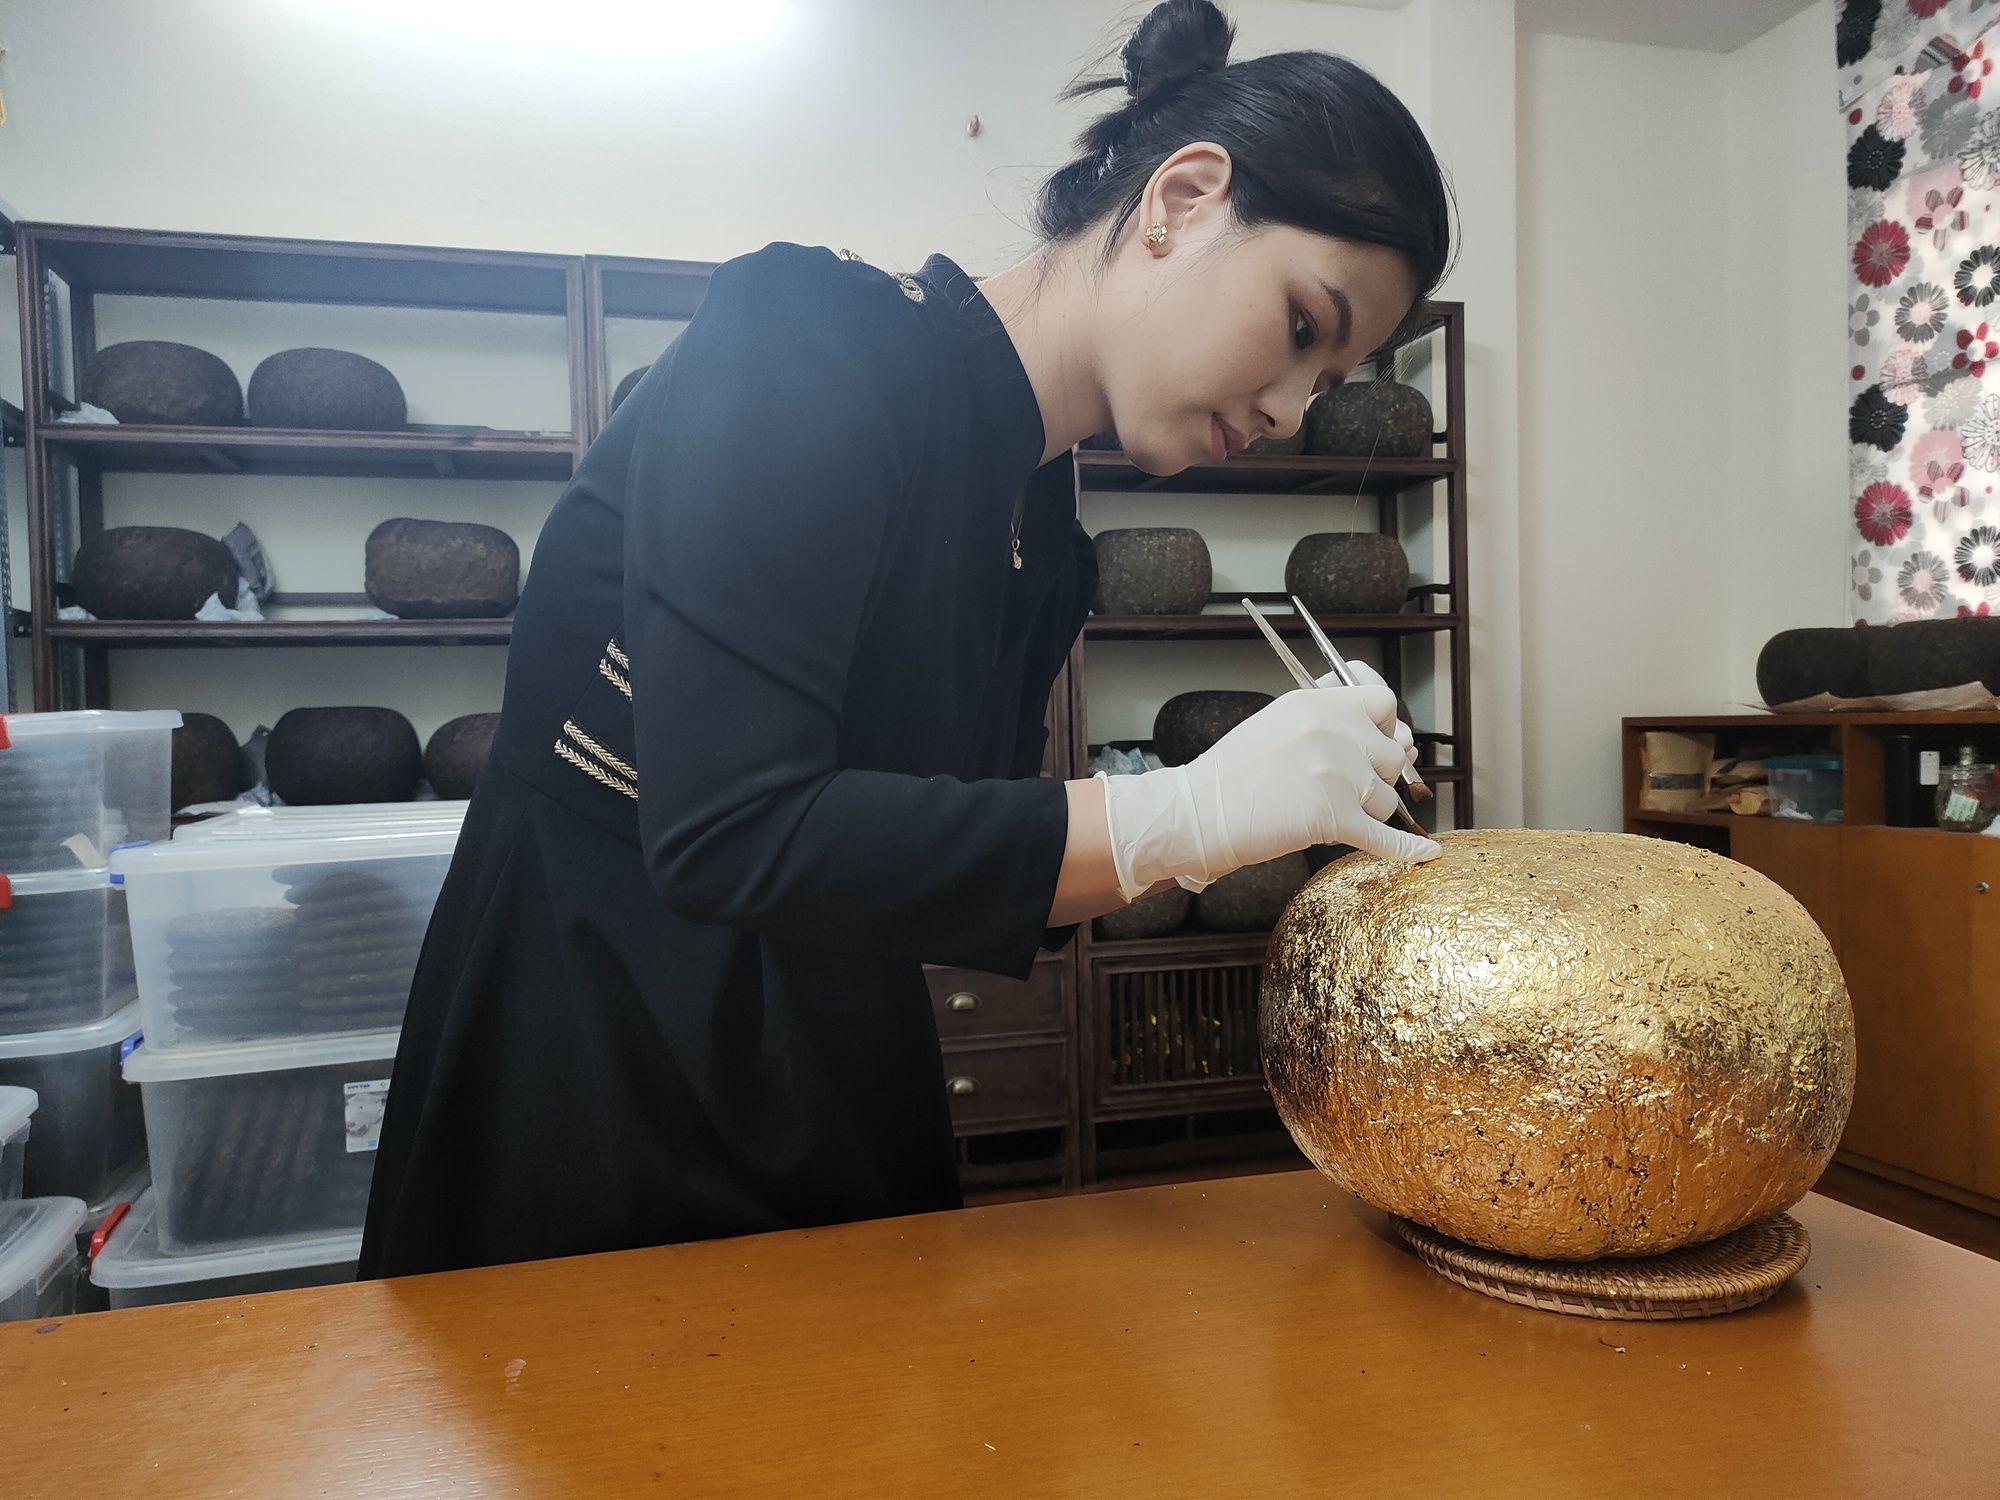 Độc đáo Thạch cổ trà bọc vàng 4.990.000 đồng/bánh không đủ hàng để bán - Ảnh 1.